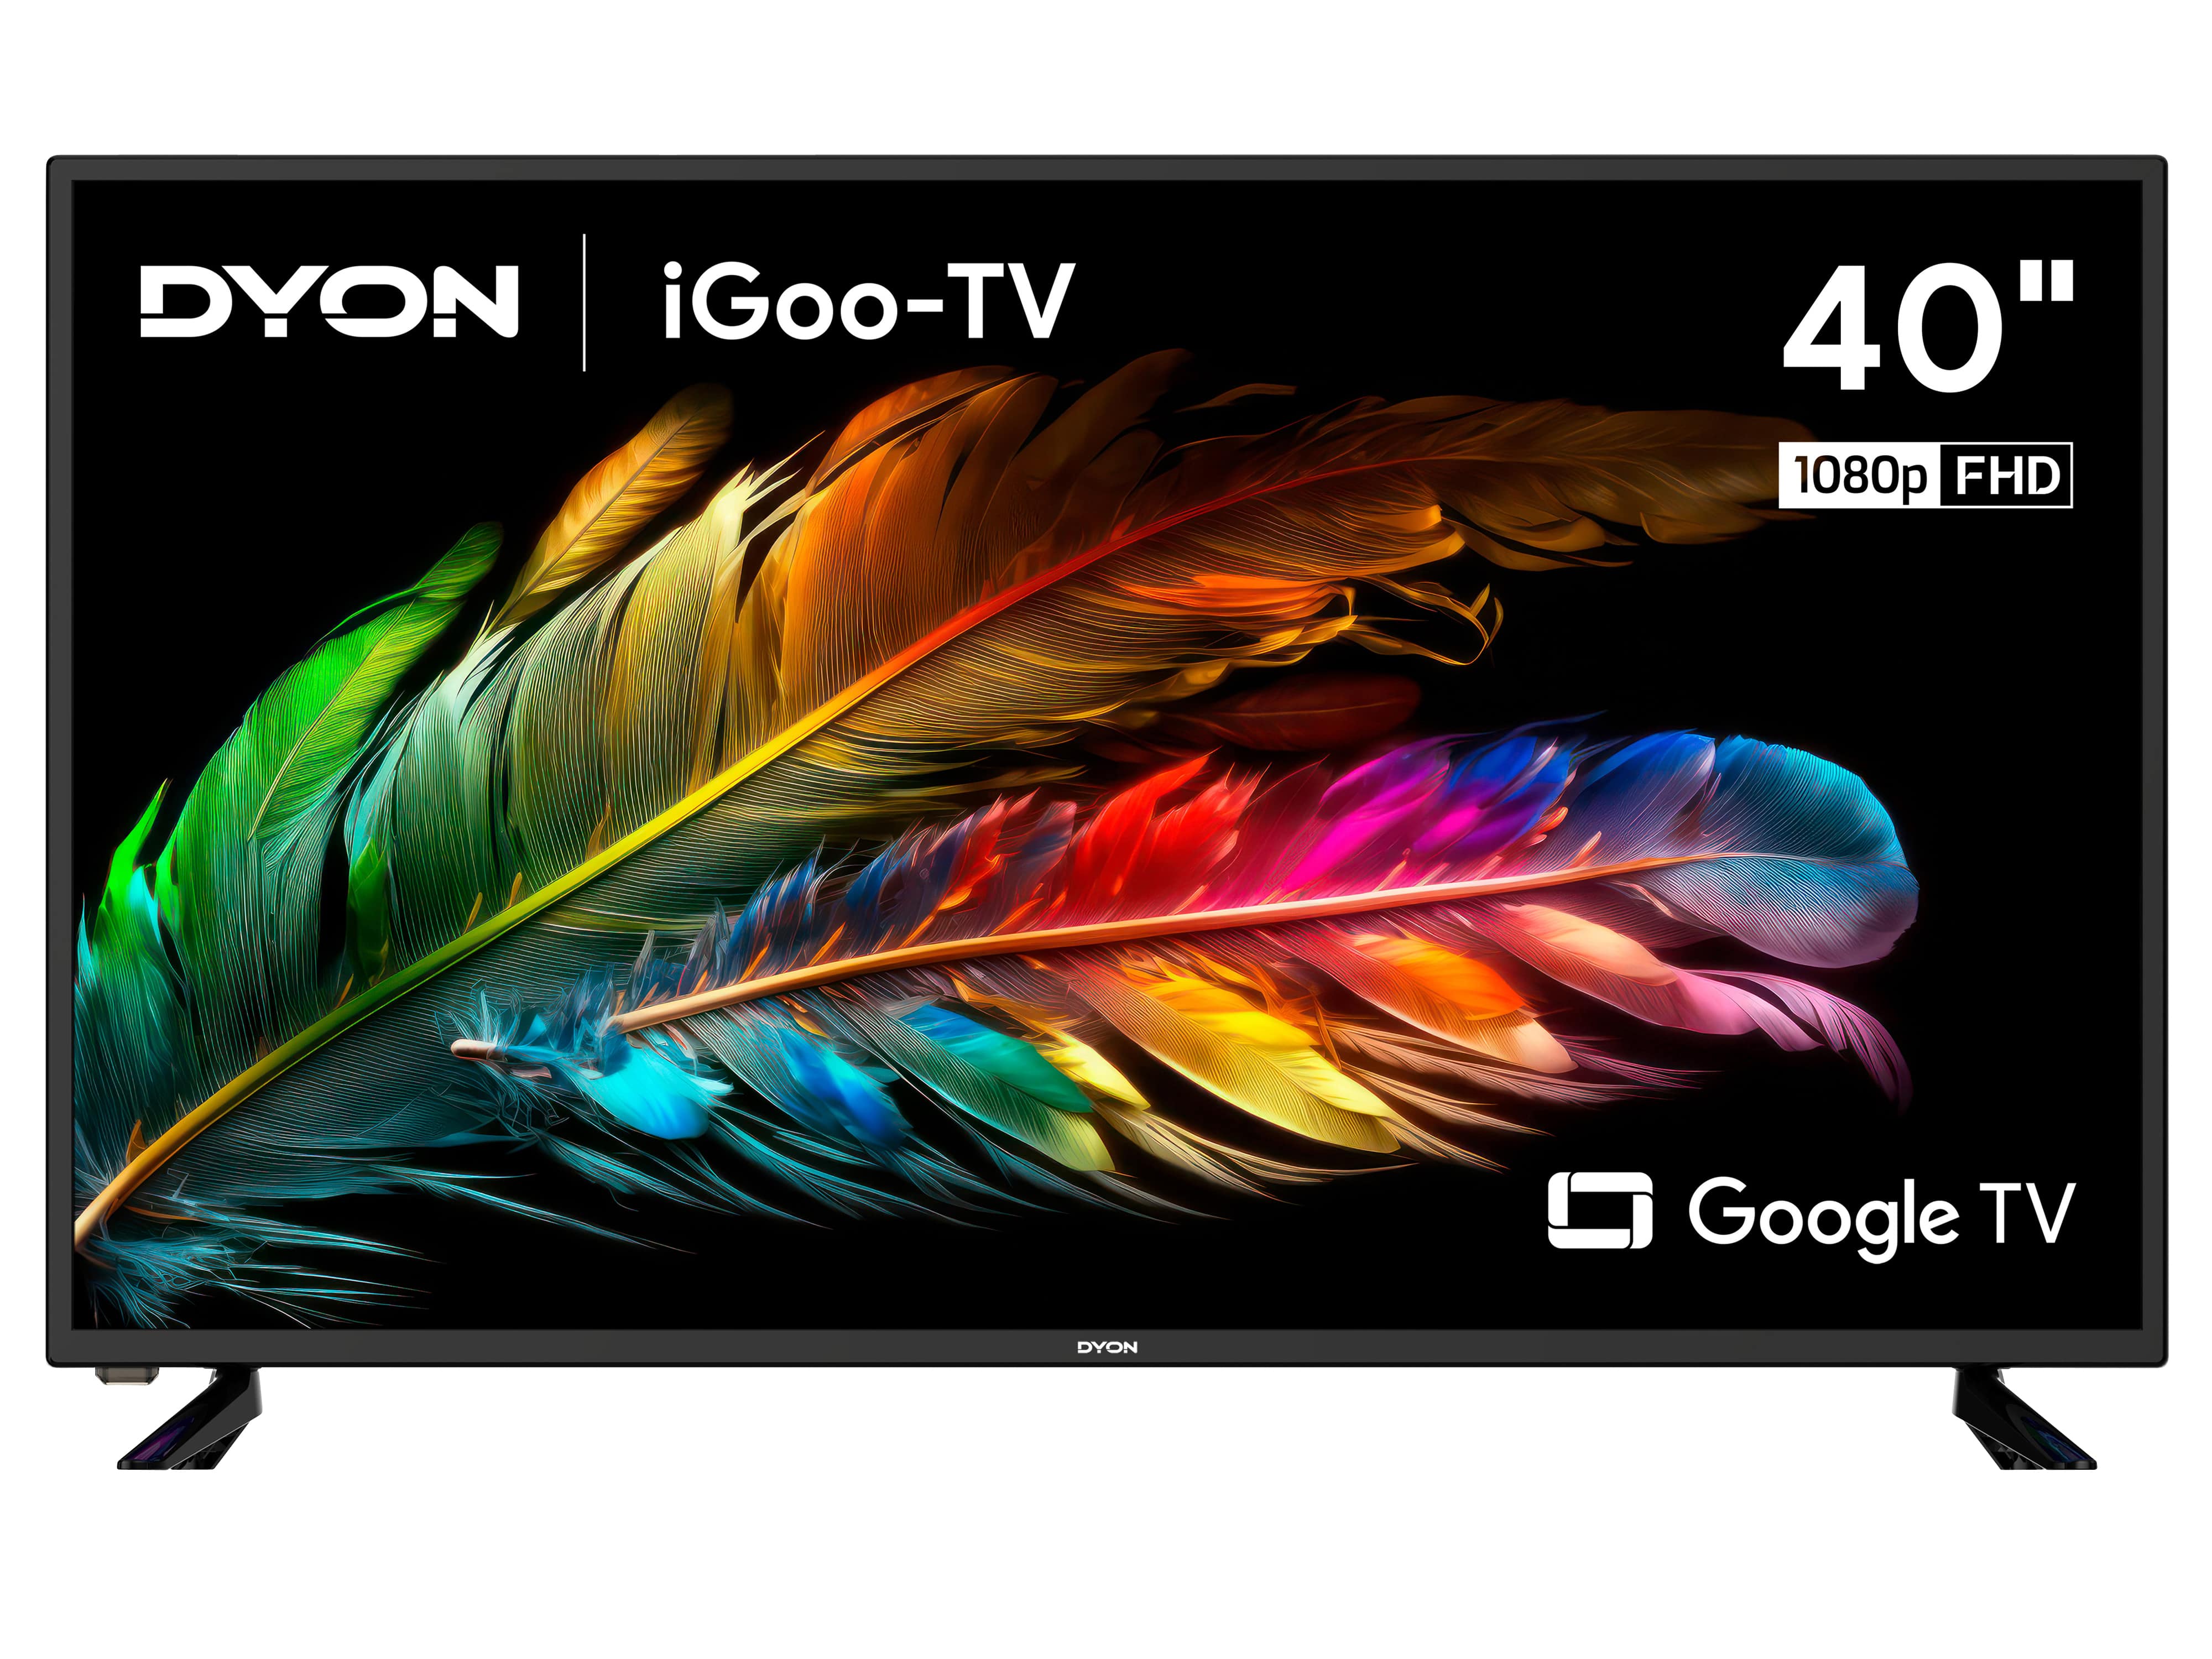 DYON LED-TV iGoo-TV 40F, 100 cm (40"), EEK F, FullHD